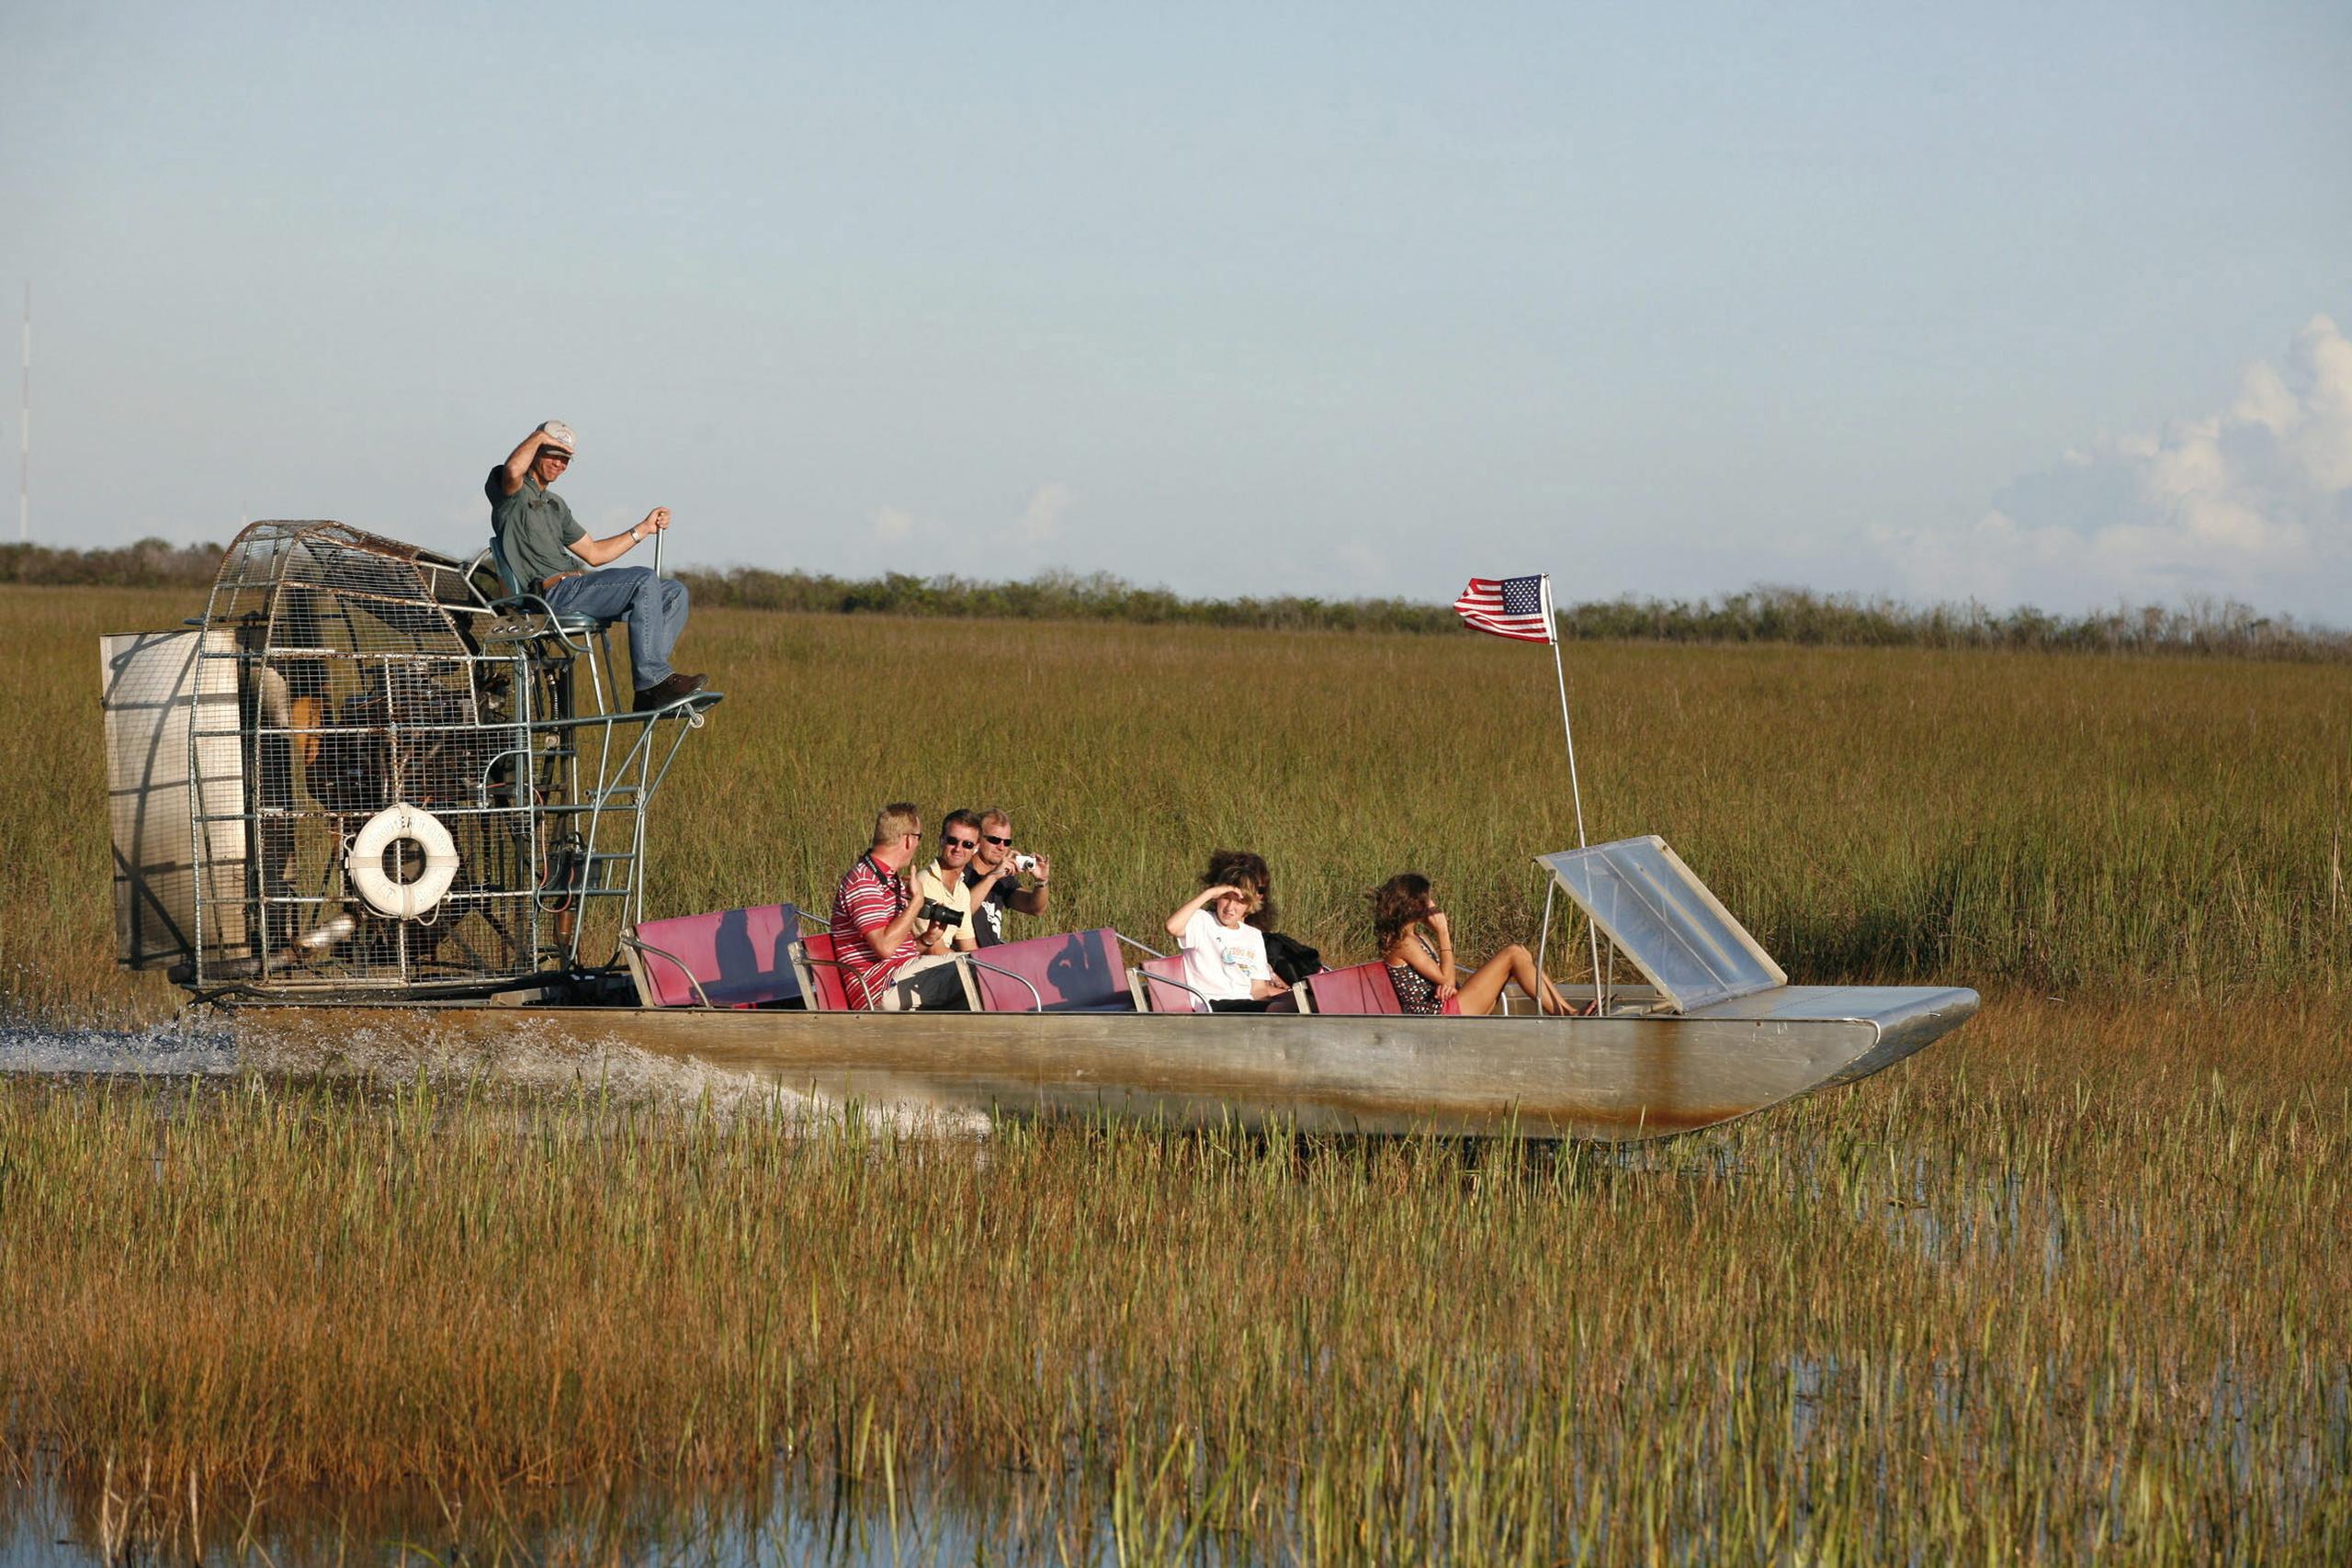 Los recorridos en hidrodeslizadores o "airboats" son muy populares en Florida.